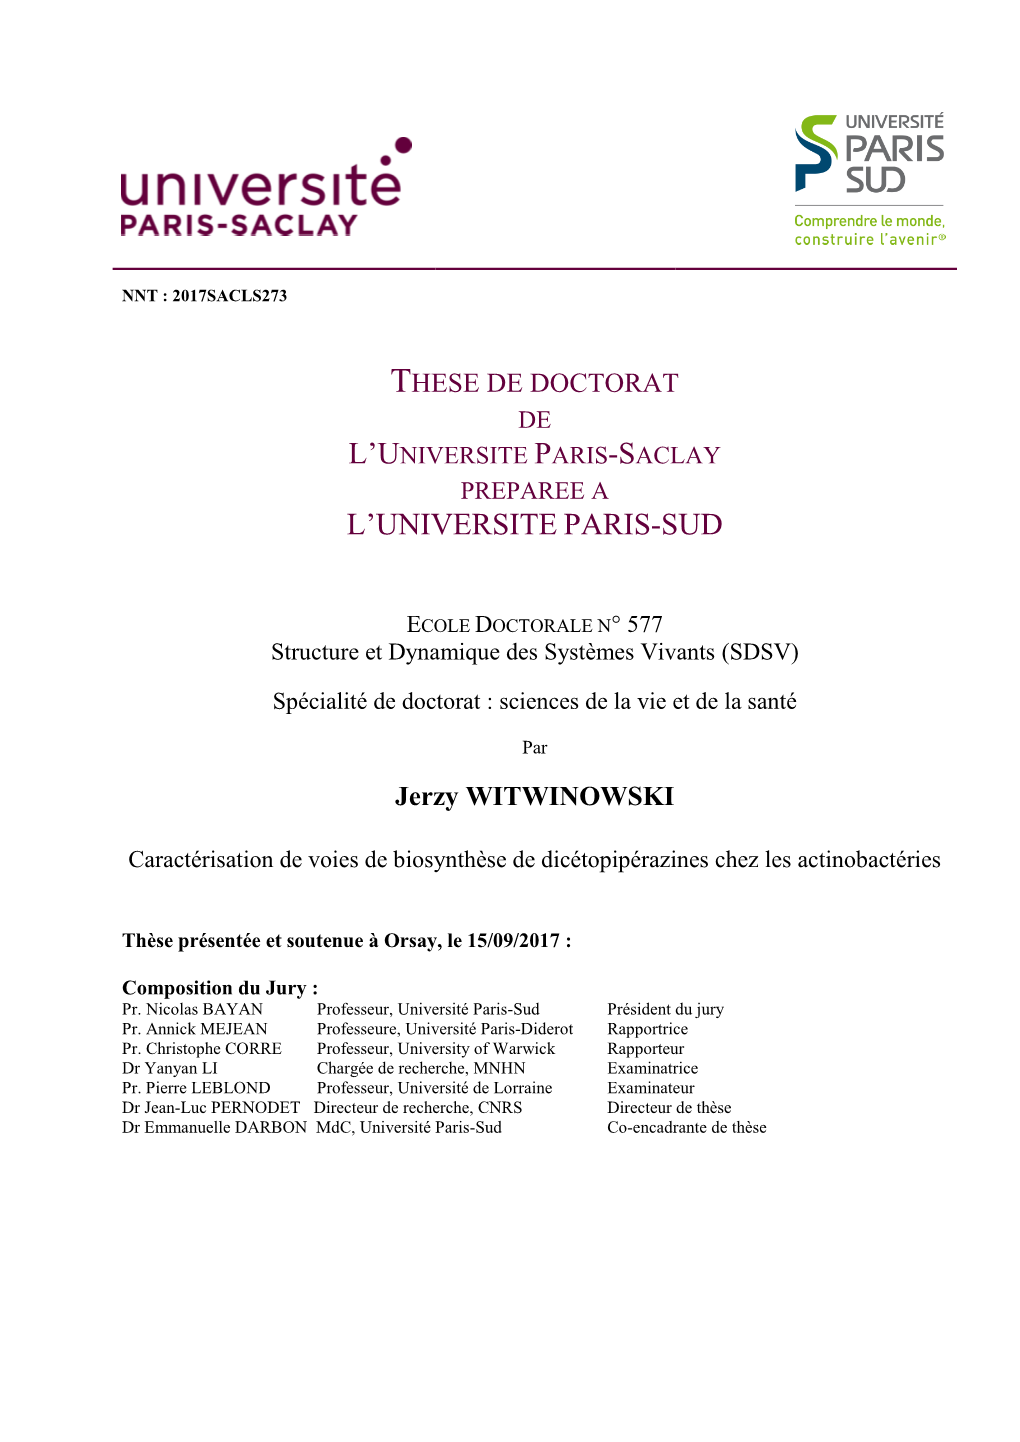 L'universite Paris-Sud